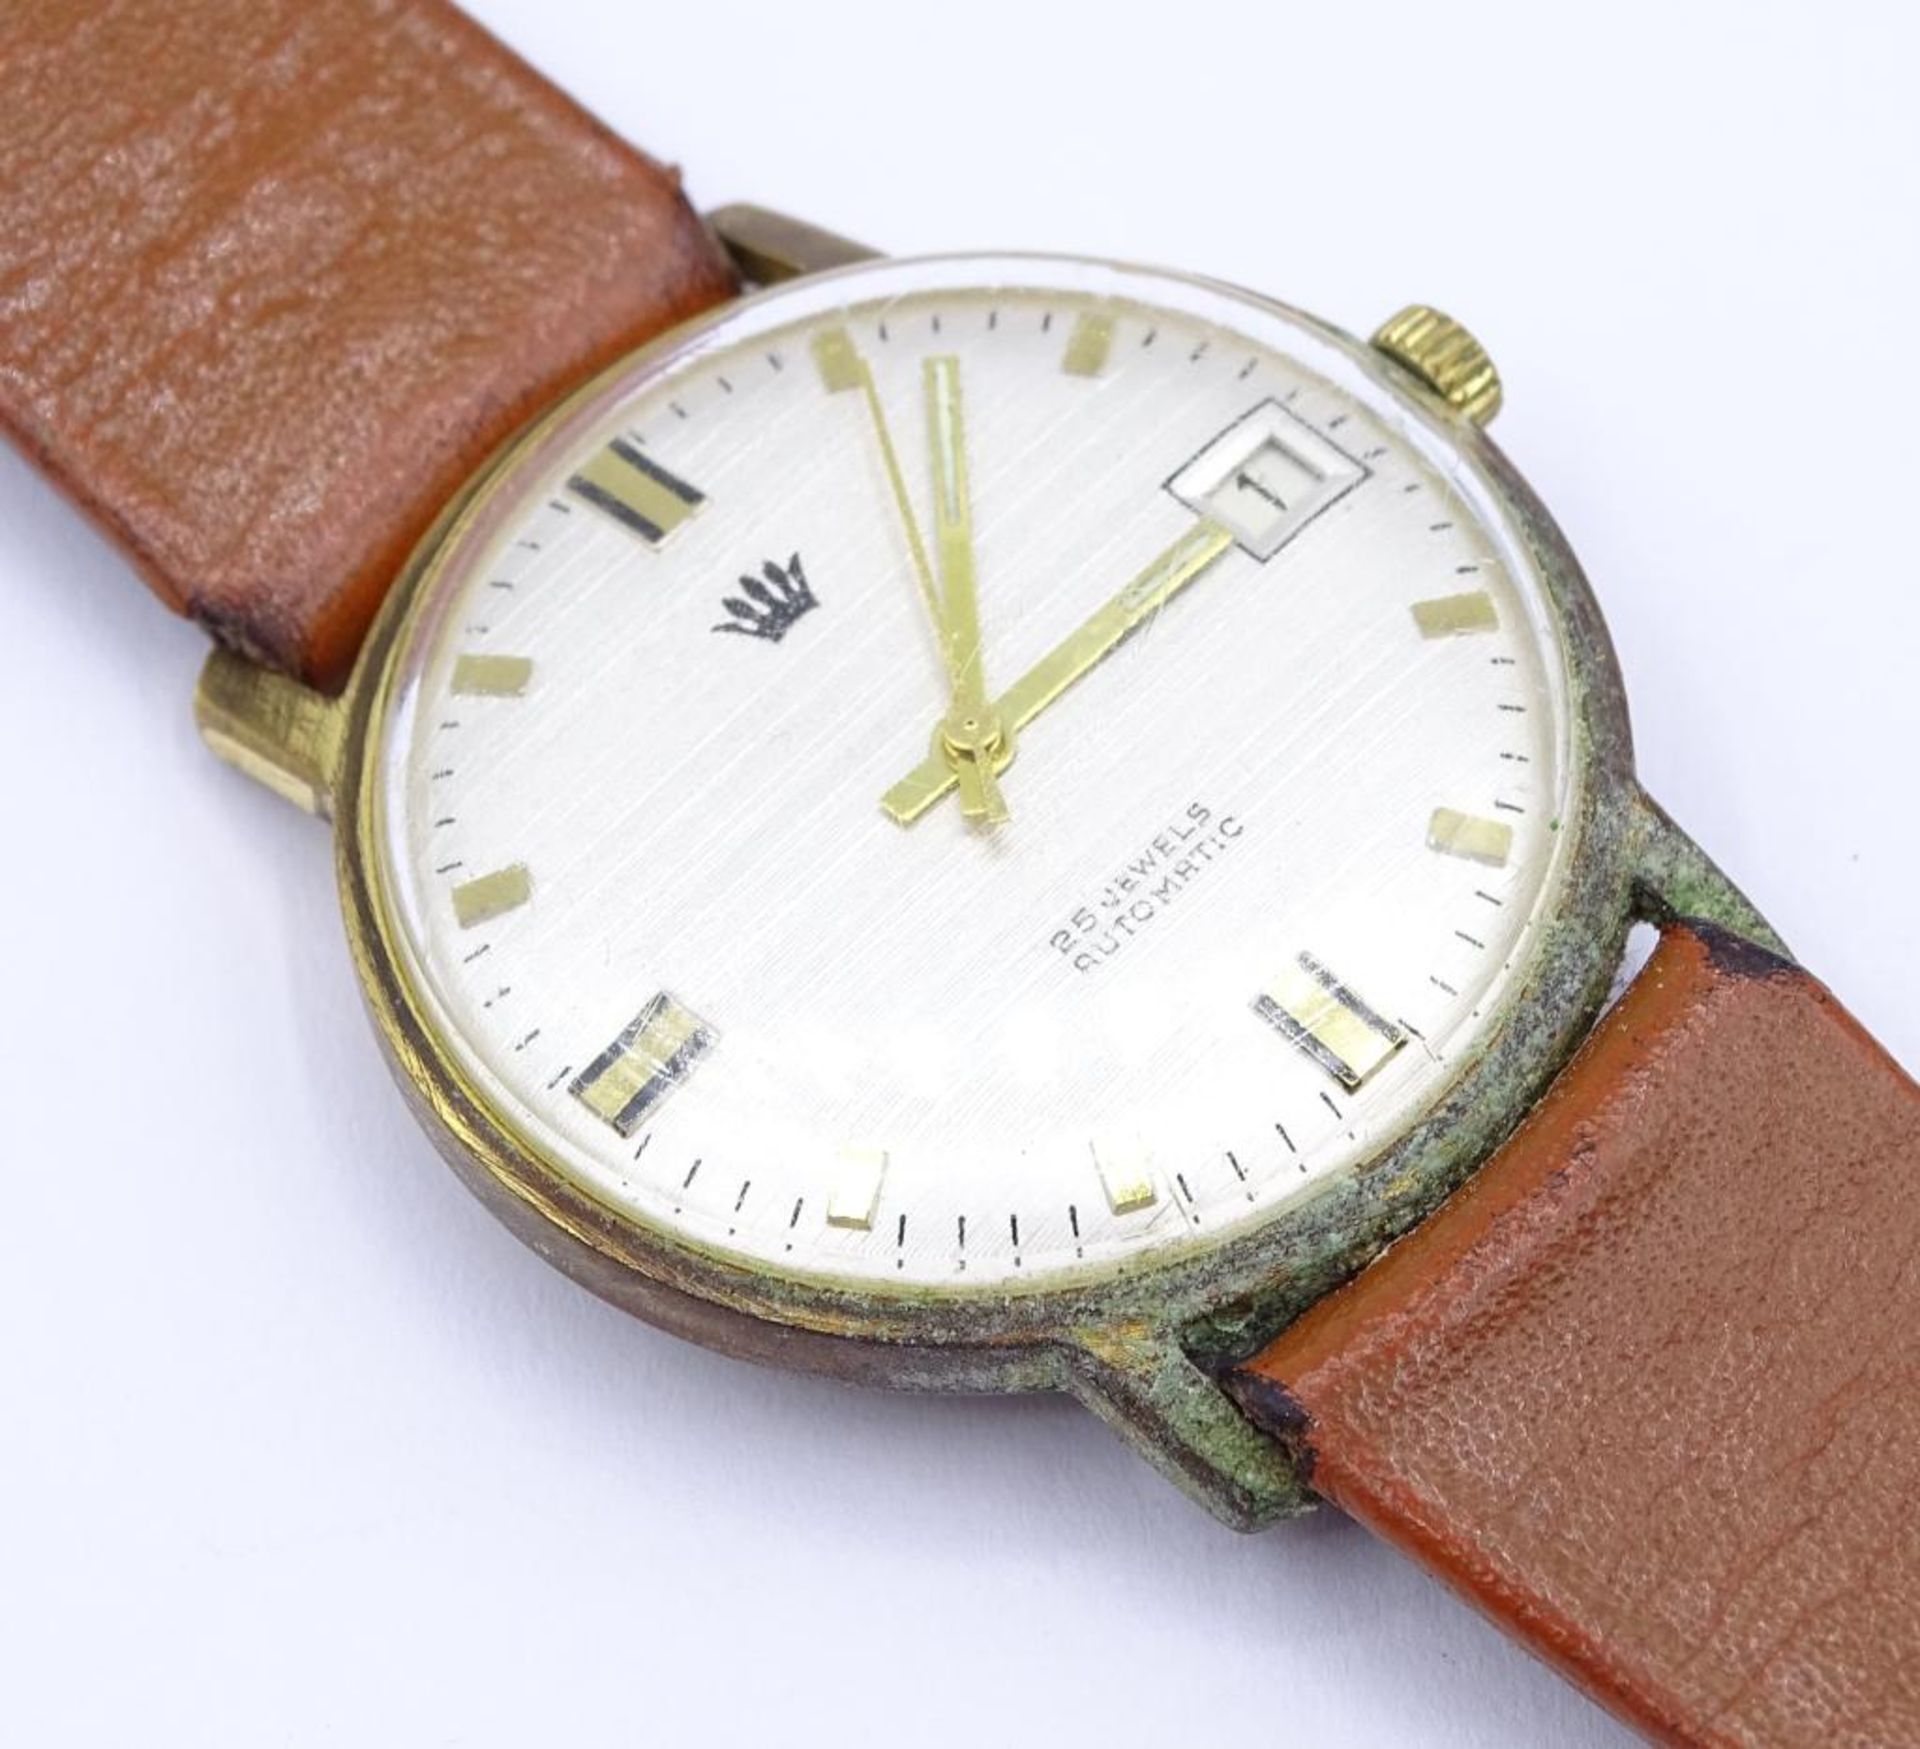 Vintage Herren Armbanduhr, Kronenmarke,d-3,3cm,mechanisch,Werk läuft,Alters-u. Gebrauchsspure - Bild 5 aus 5